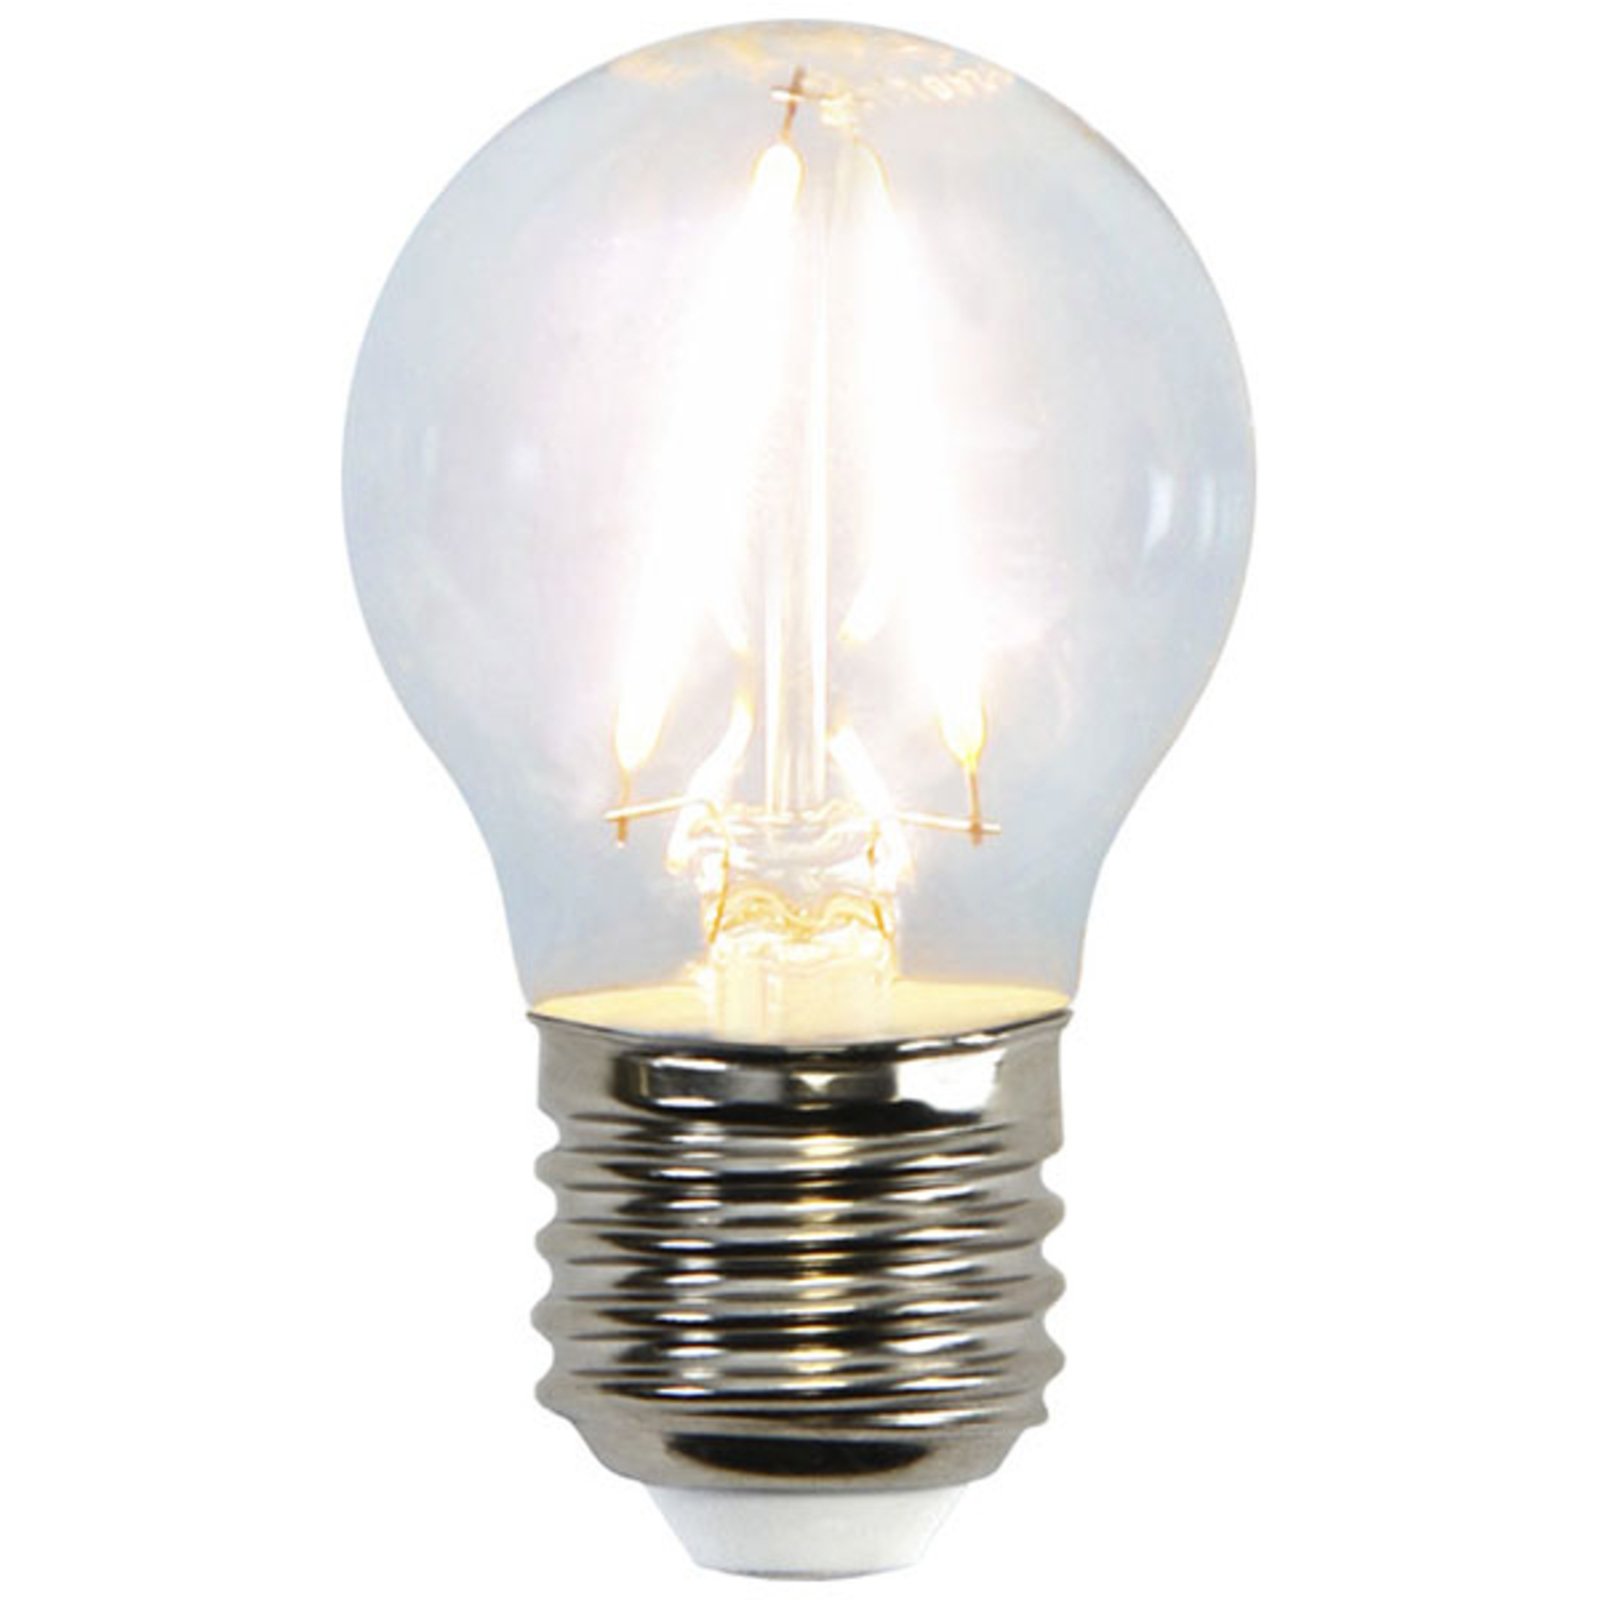 LED miniglobe lamp E27 G45 2W 2700K hõõgniit